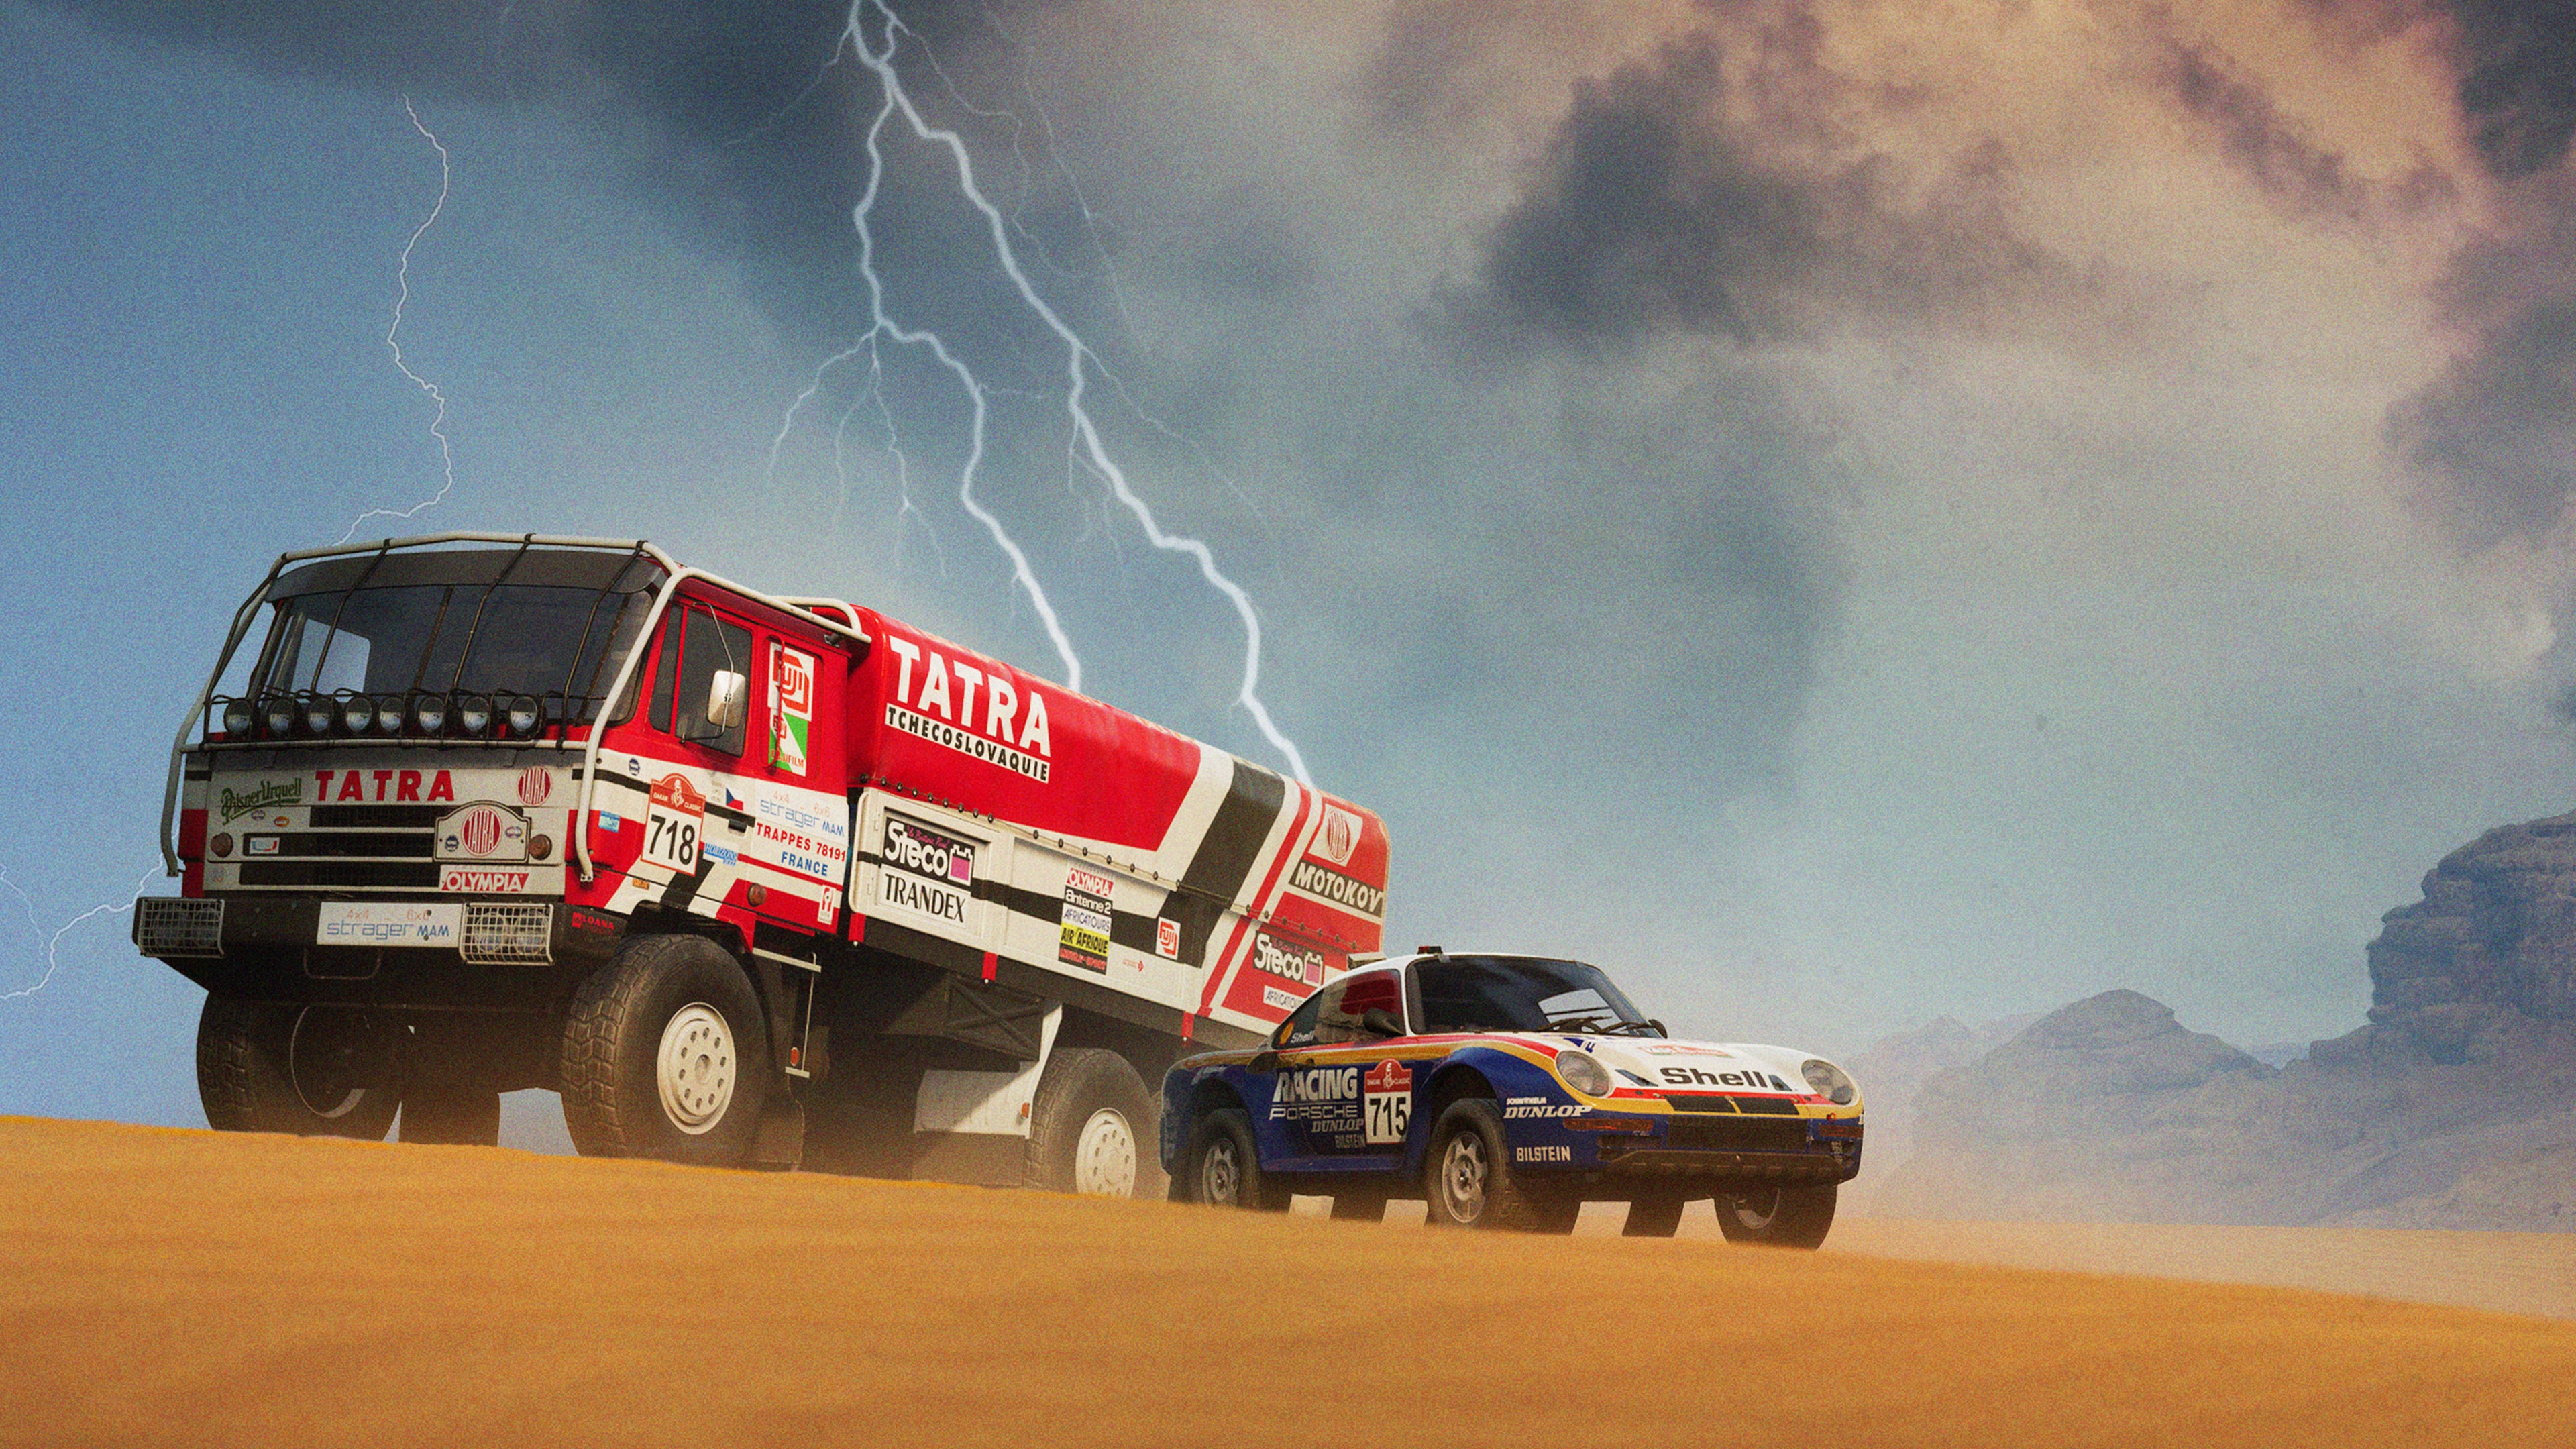 Dakar Desert Rally - Classics Vehicle Pack #1